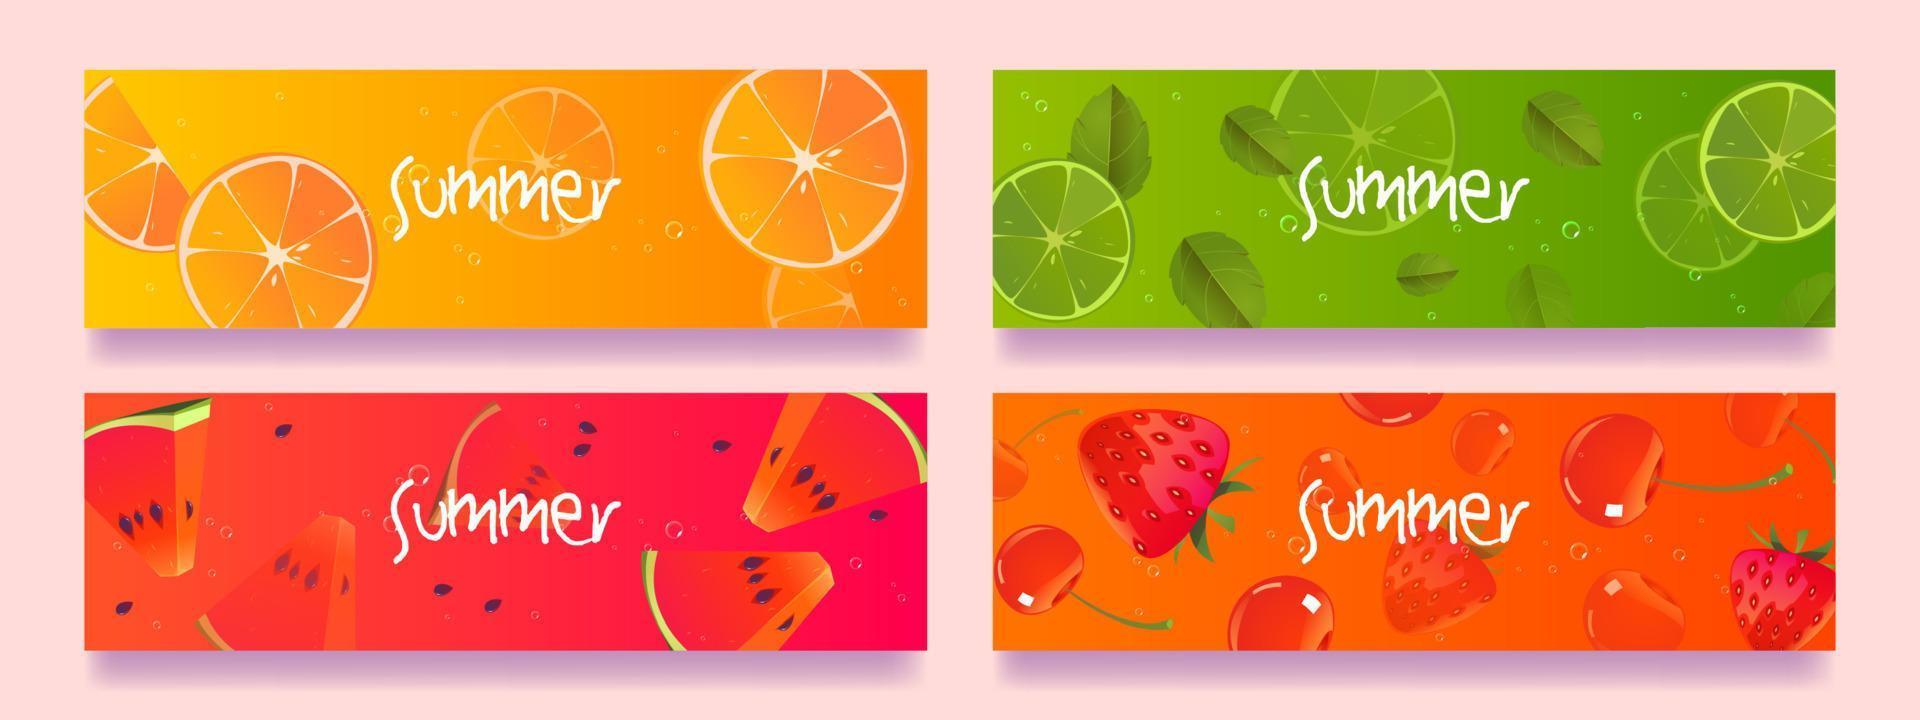 Summer fruits cartoon horizontal banners set. vector